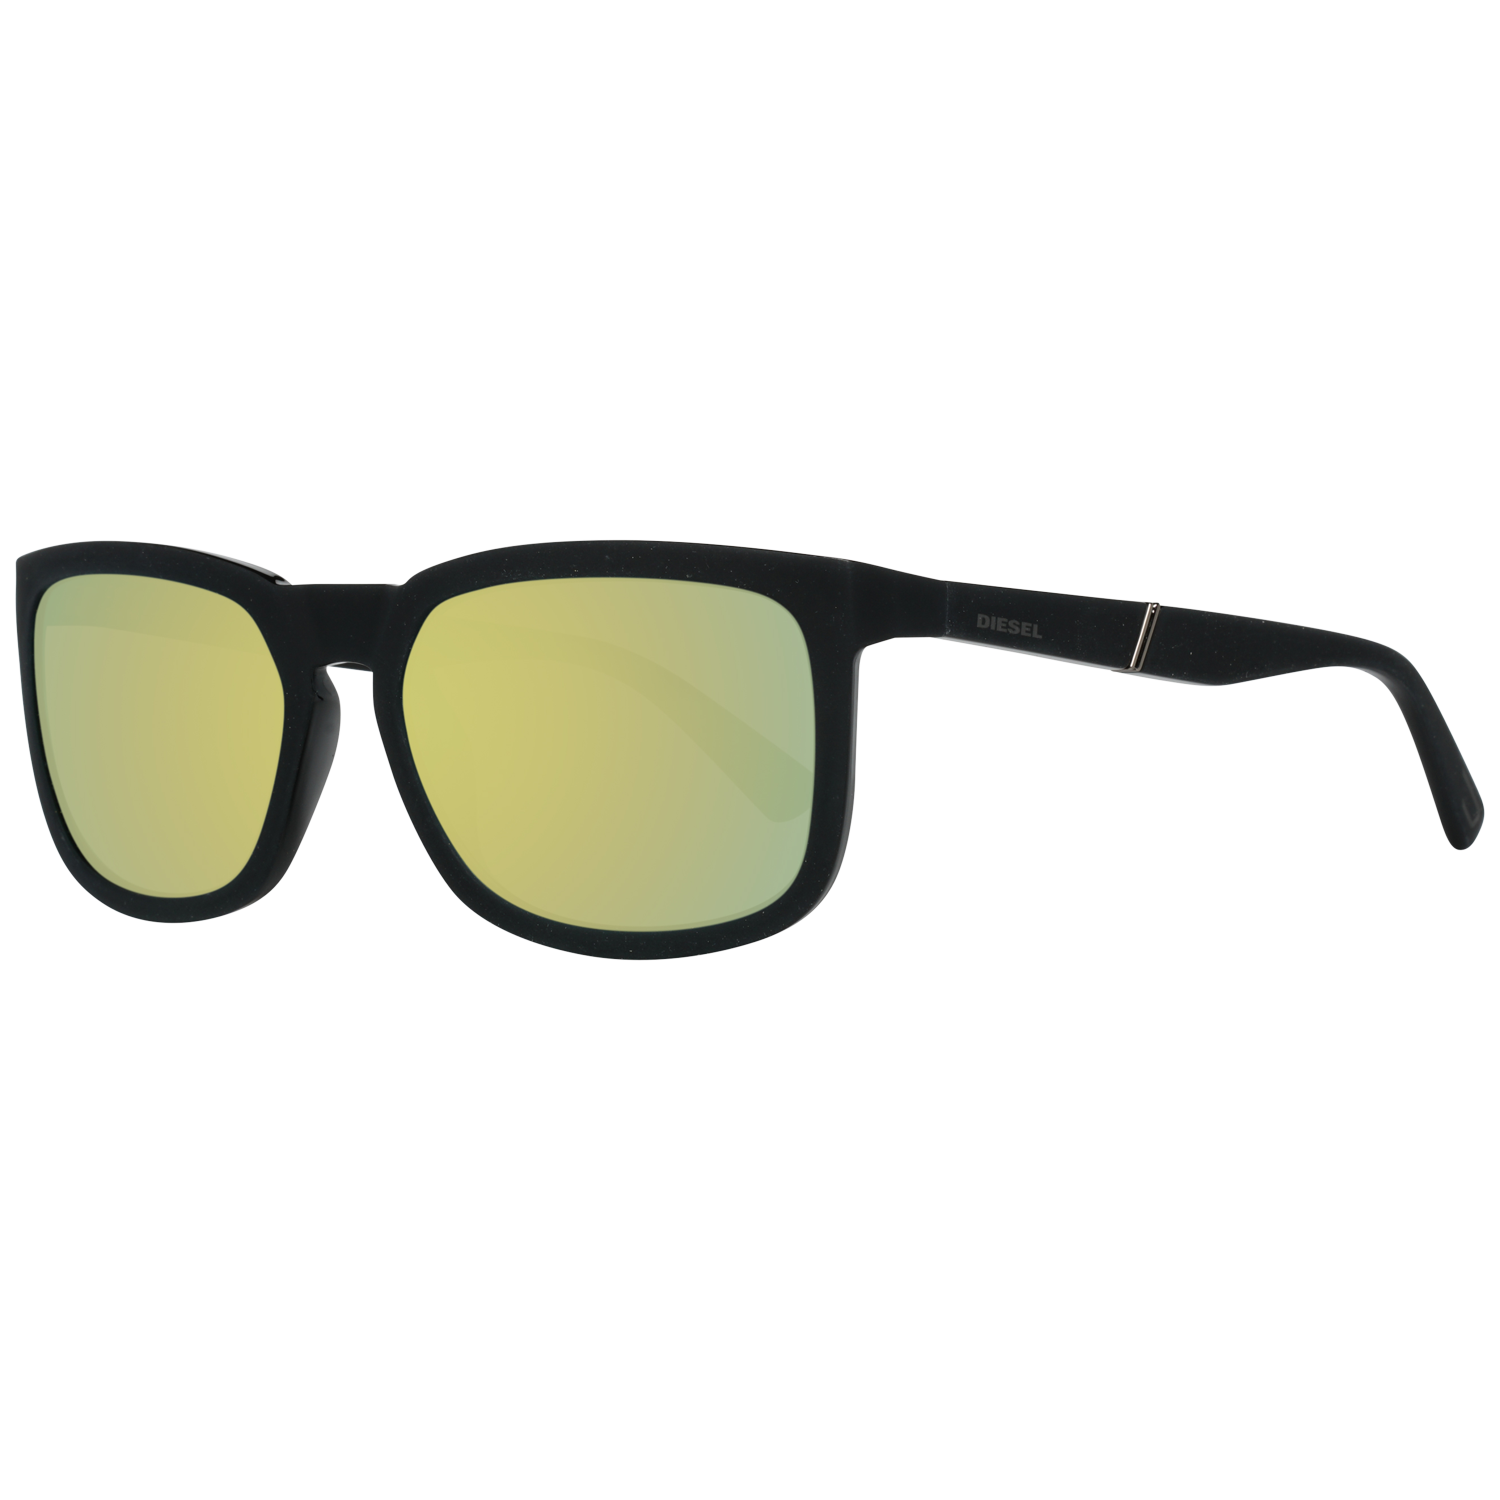 Diesel Sunglasses DL0262 02Q 56